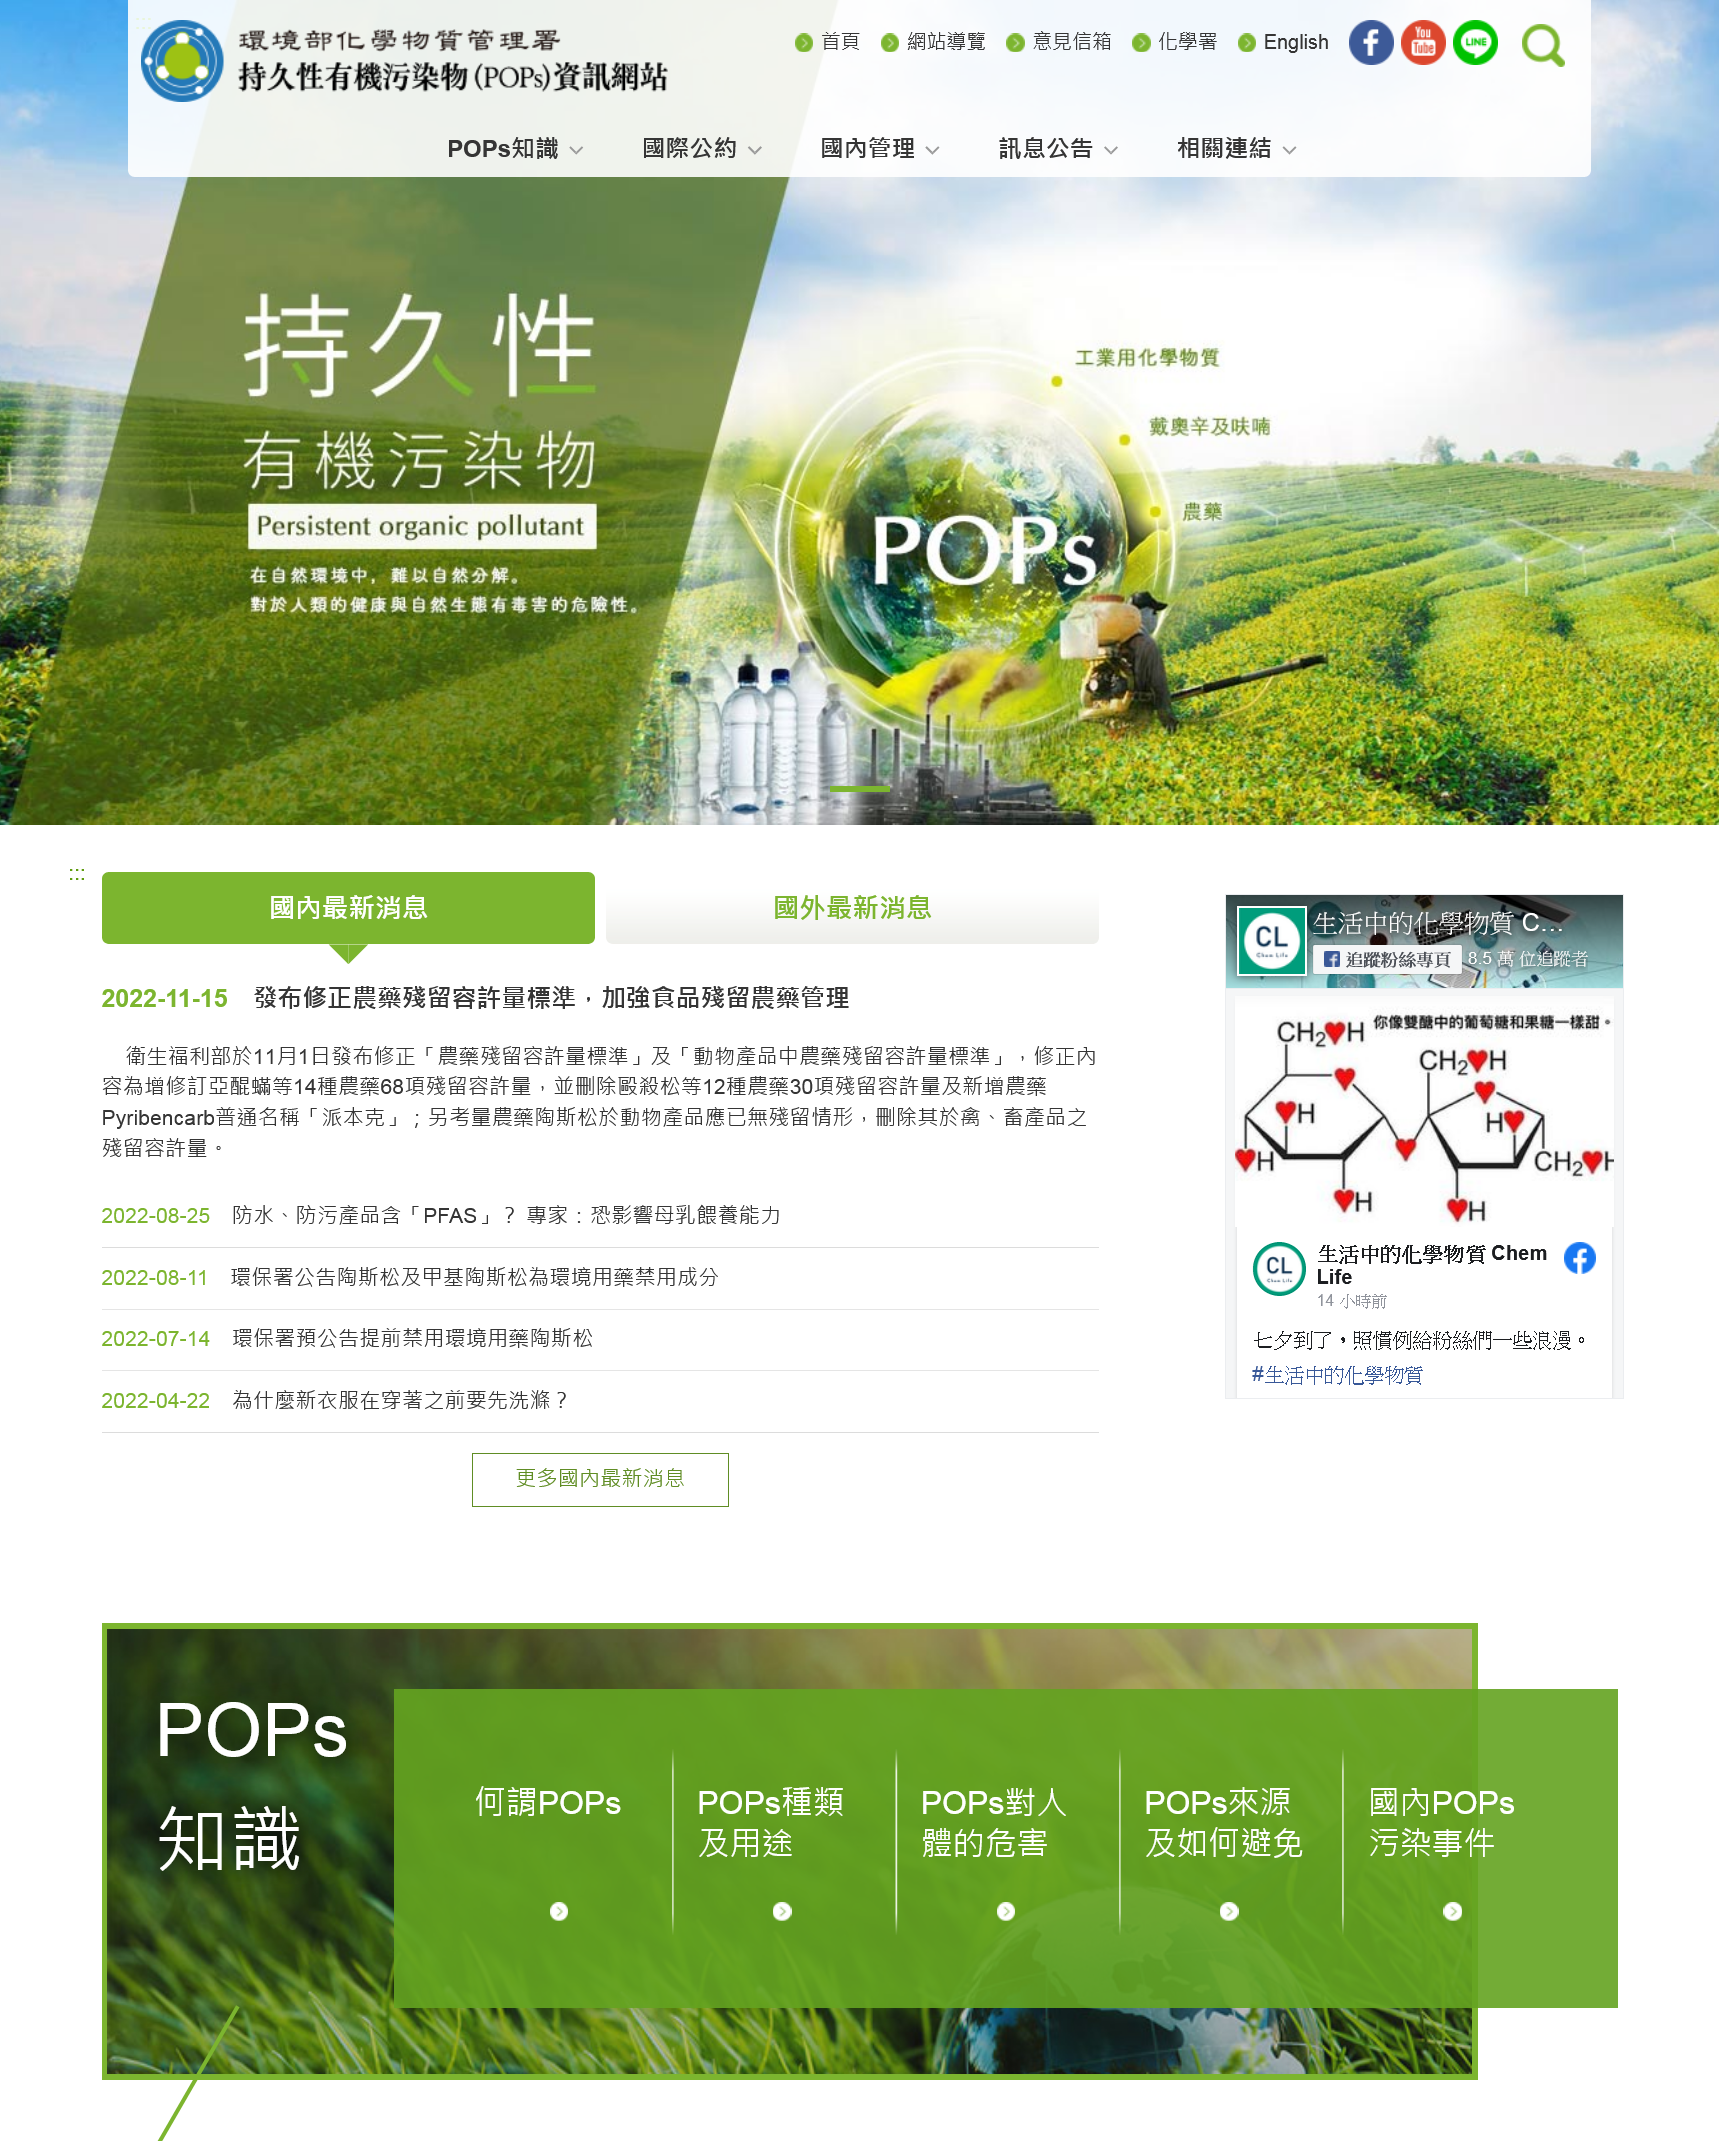 持久性有機污染物_POPs_資訊網站